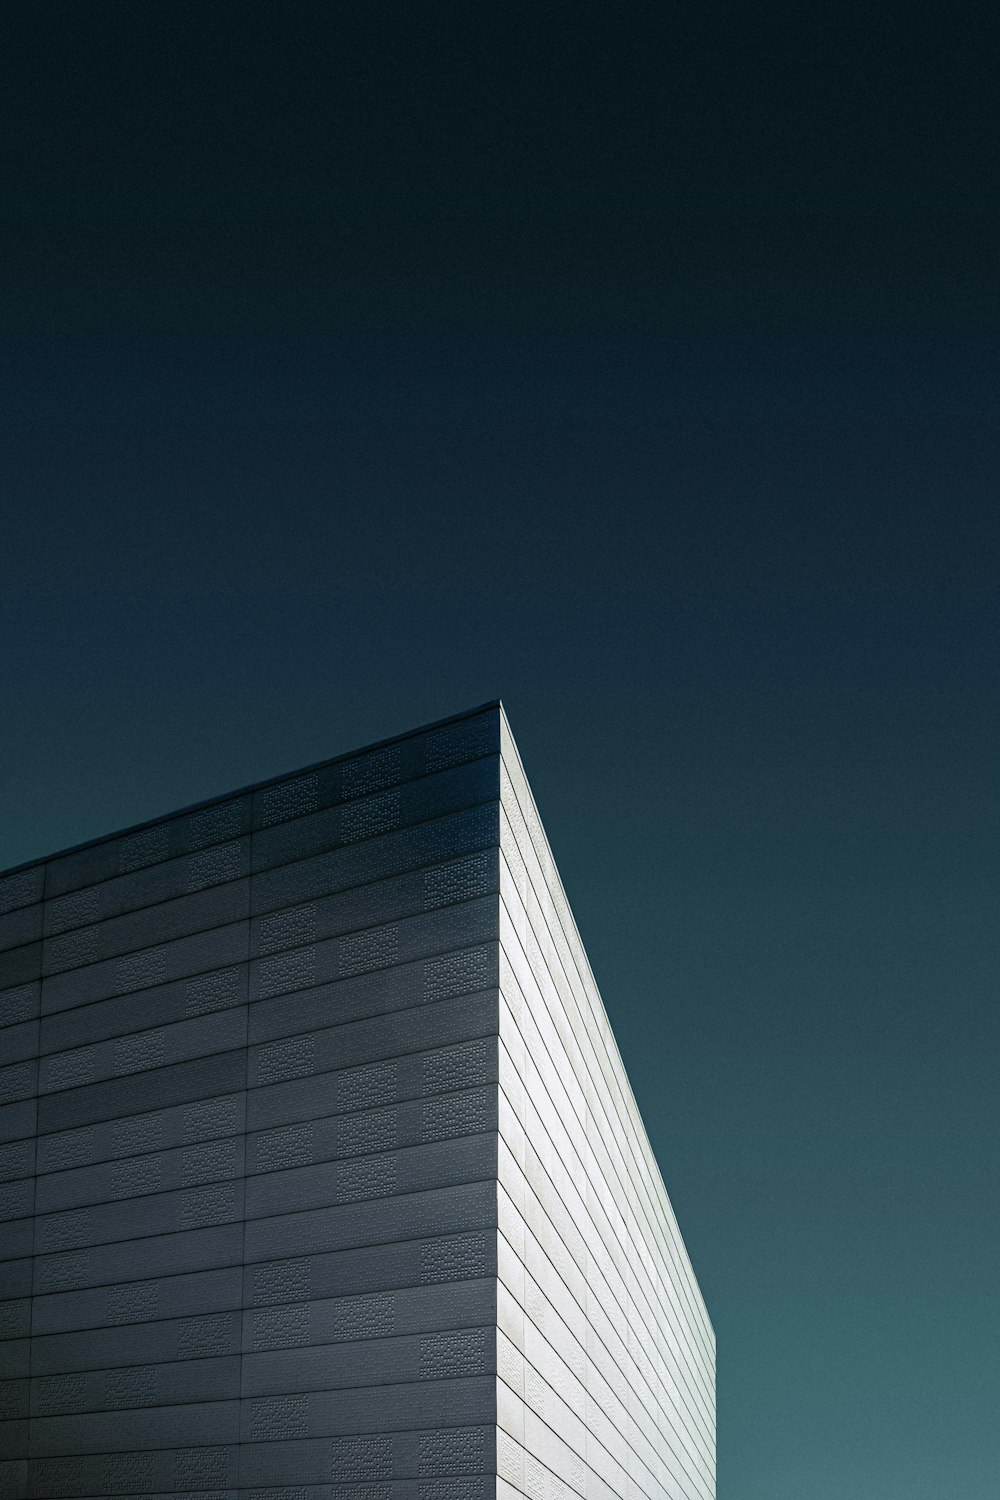 Fotografía de ángulo bajo de un edificio de hormigón blanco bajo un cielo azul